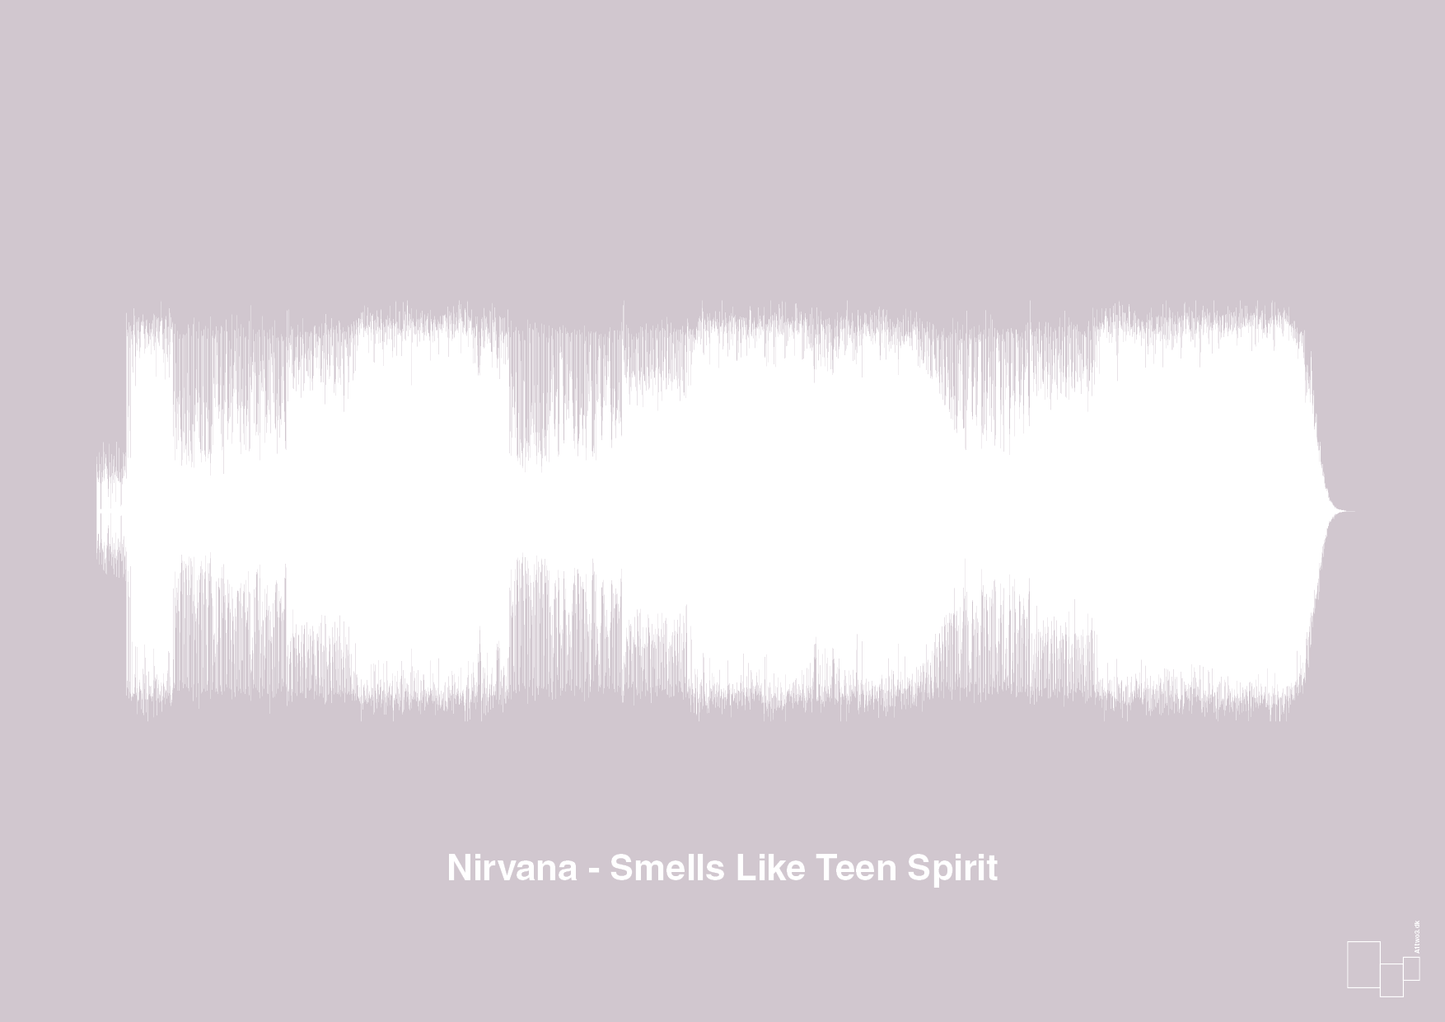 nirvana - smells like teen spirit - Plakat med Musik i Dusty Lilac